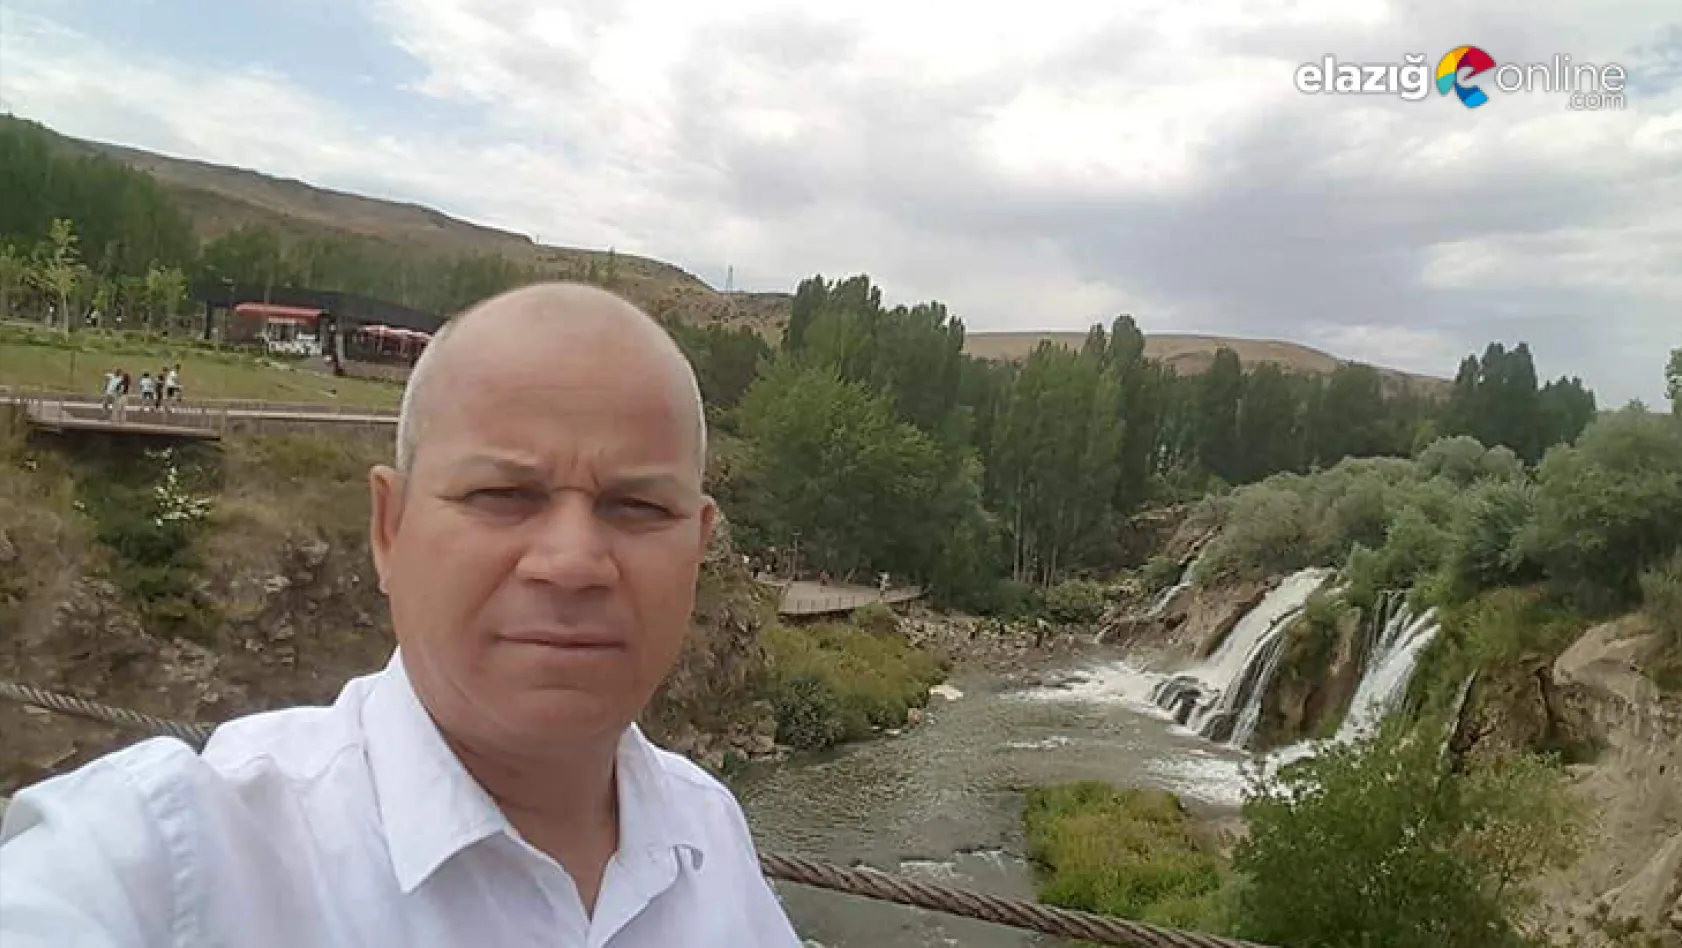 Elazığ Orman Bölge Müdür Yardımcısı Mehmet Kaya, korona virüse yenik düştü